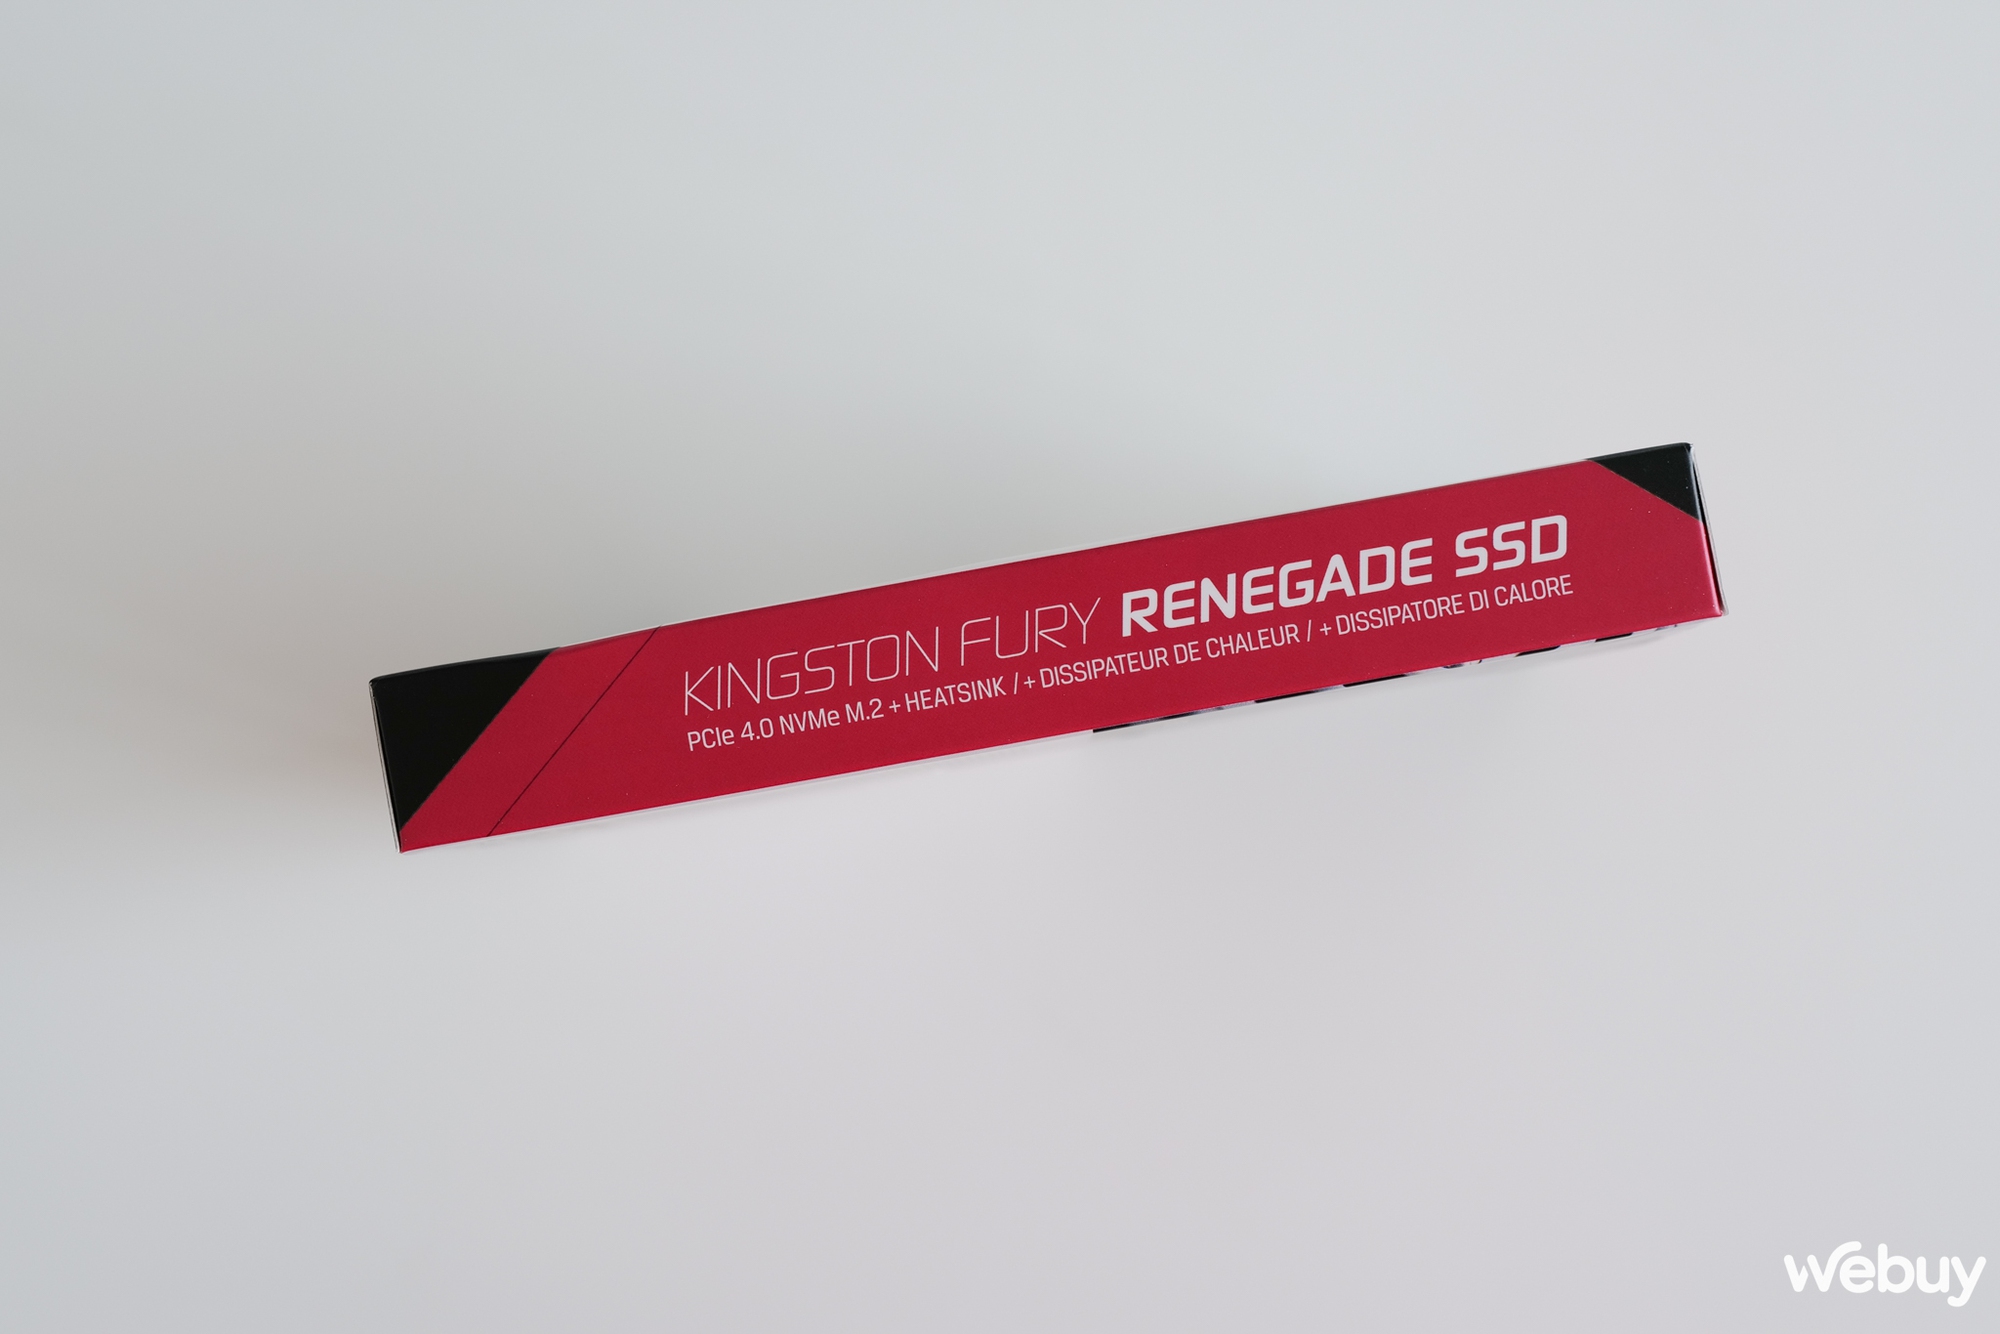 Trên tay SSD cao cấp Kingston Fury Renegade: PCIe 4.0 tốc độ cao, tích hợp sẵn cả tản nhiệt - Ảnh 3.